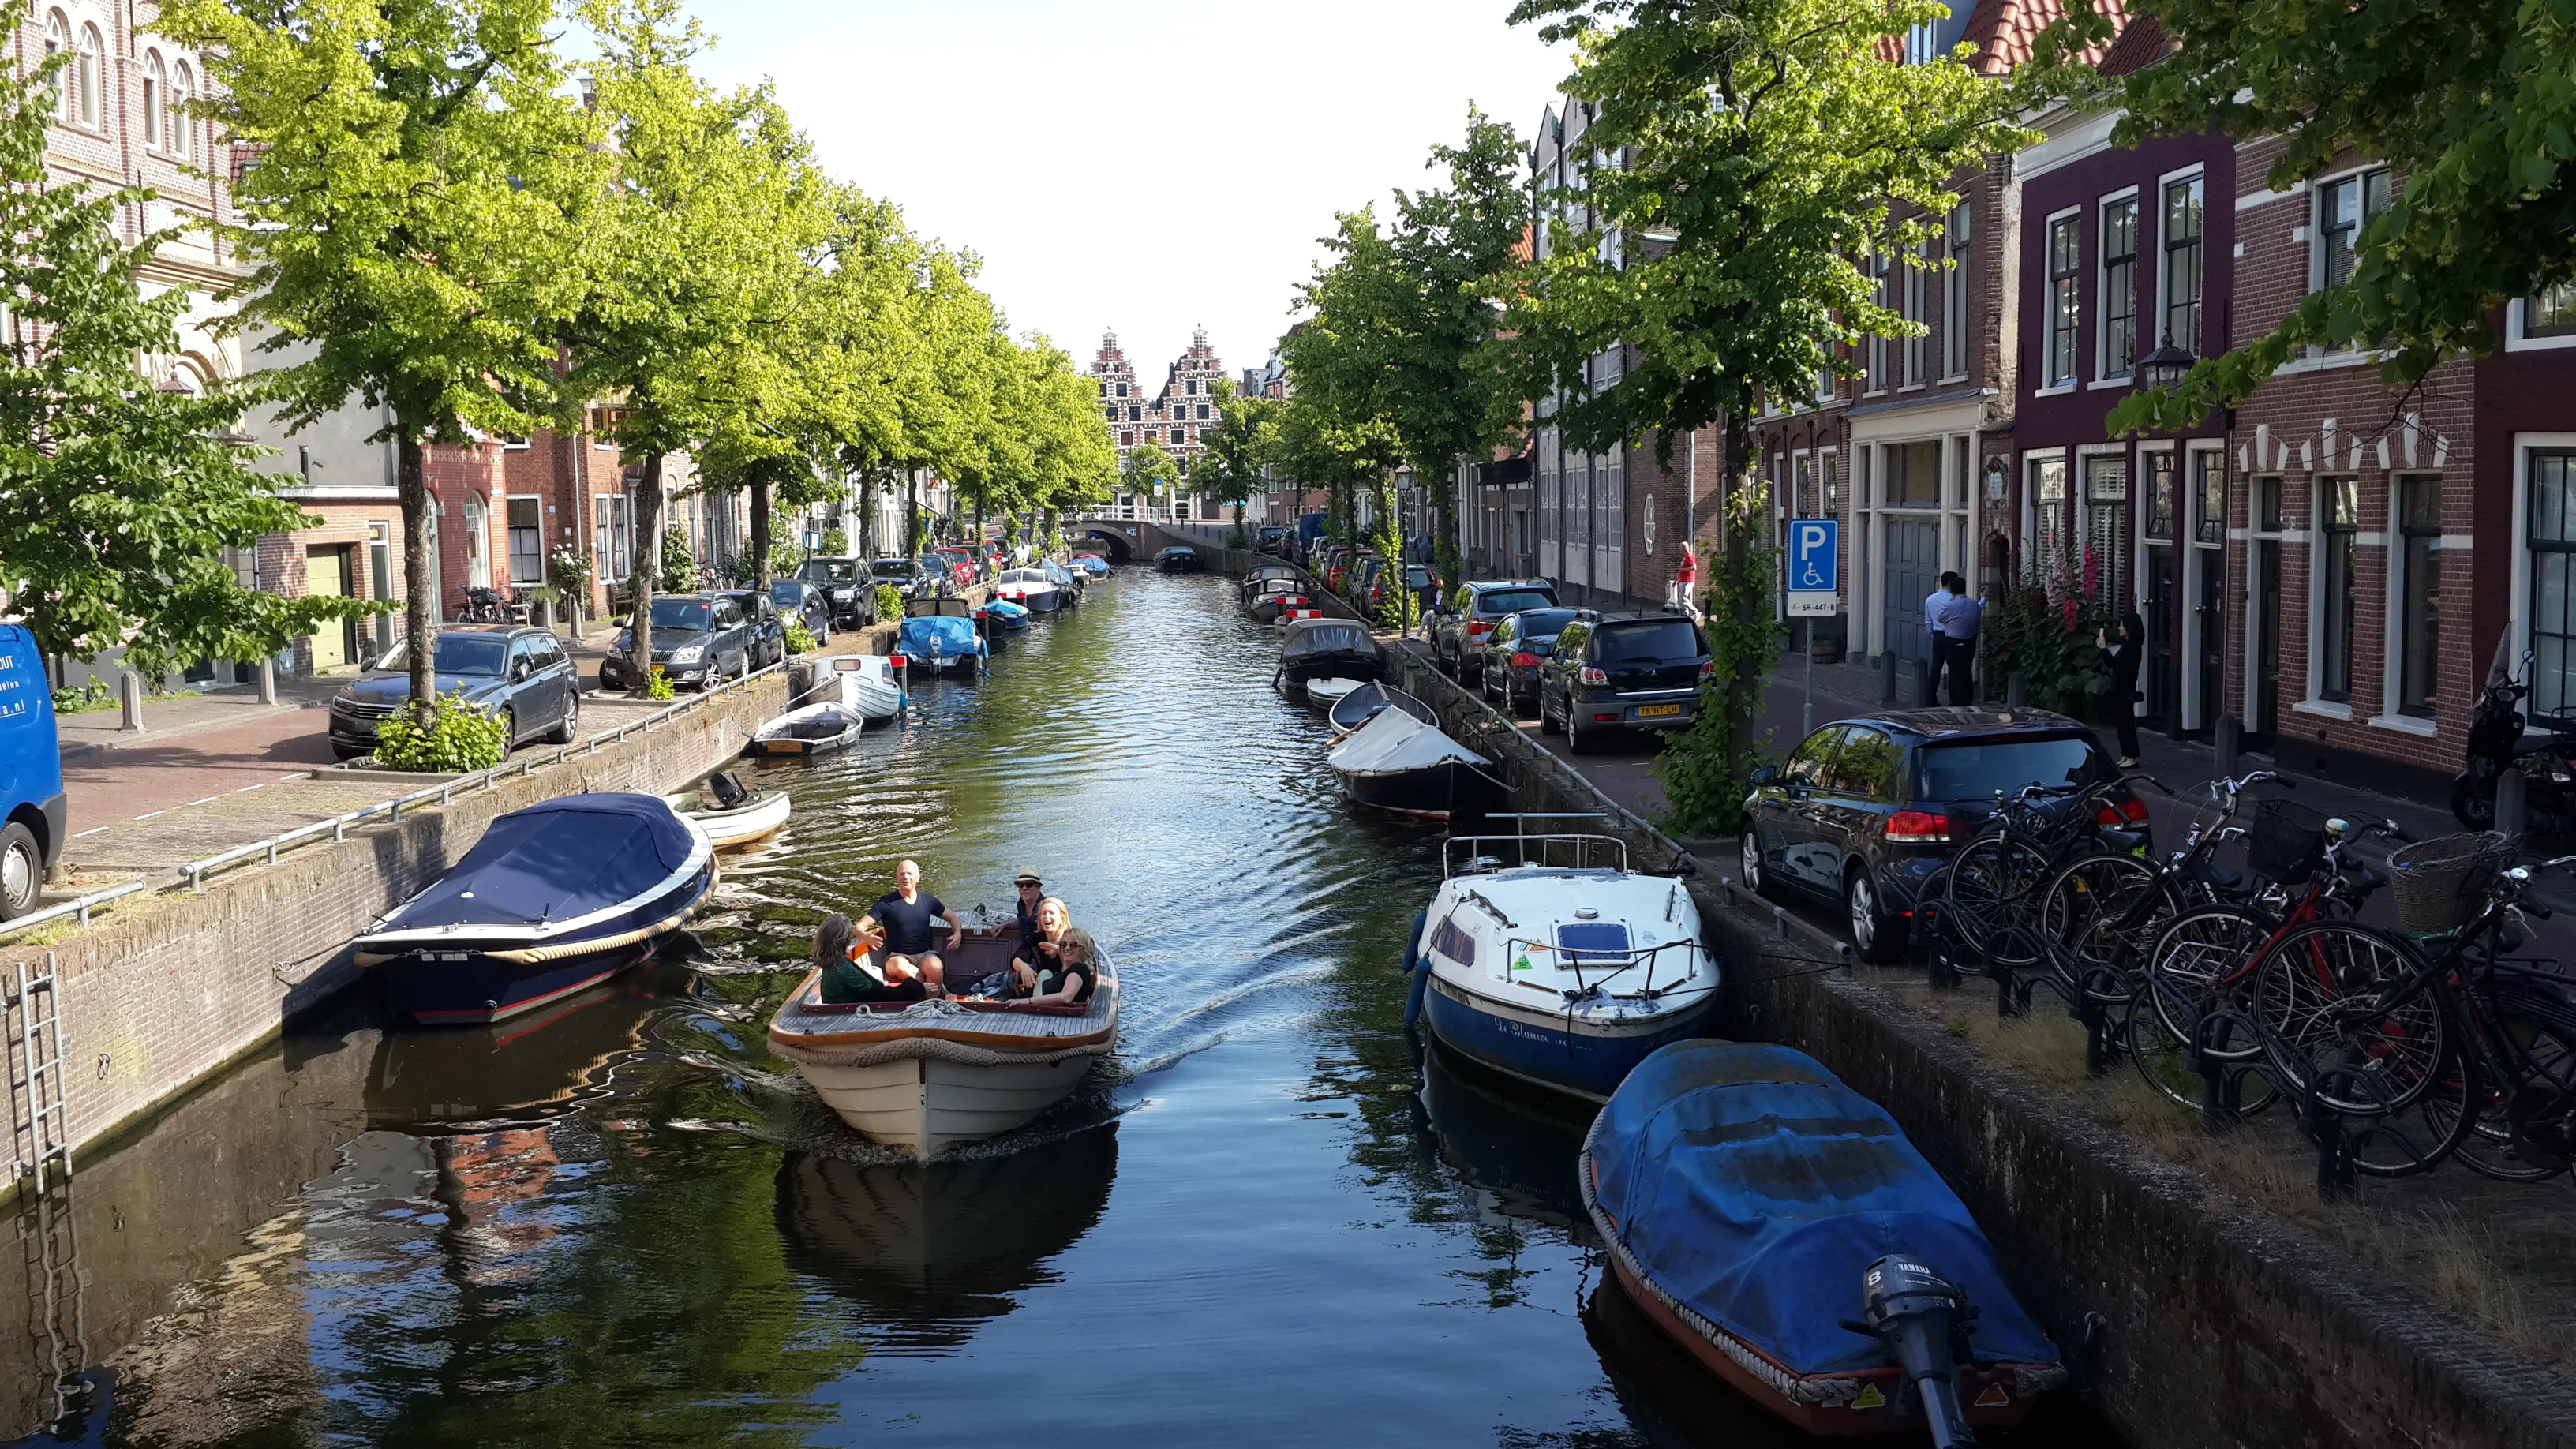 Un canal à Haarlem, ville du renouveau des bières historiques des Pays-Bas. Le Biergenootschap a pour mission de recréer les bières traditionnelles de Haarlem et de les commercialiser. Deux recettes ont été trouvées dans les archives. © Daniel Desjardins